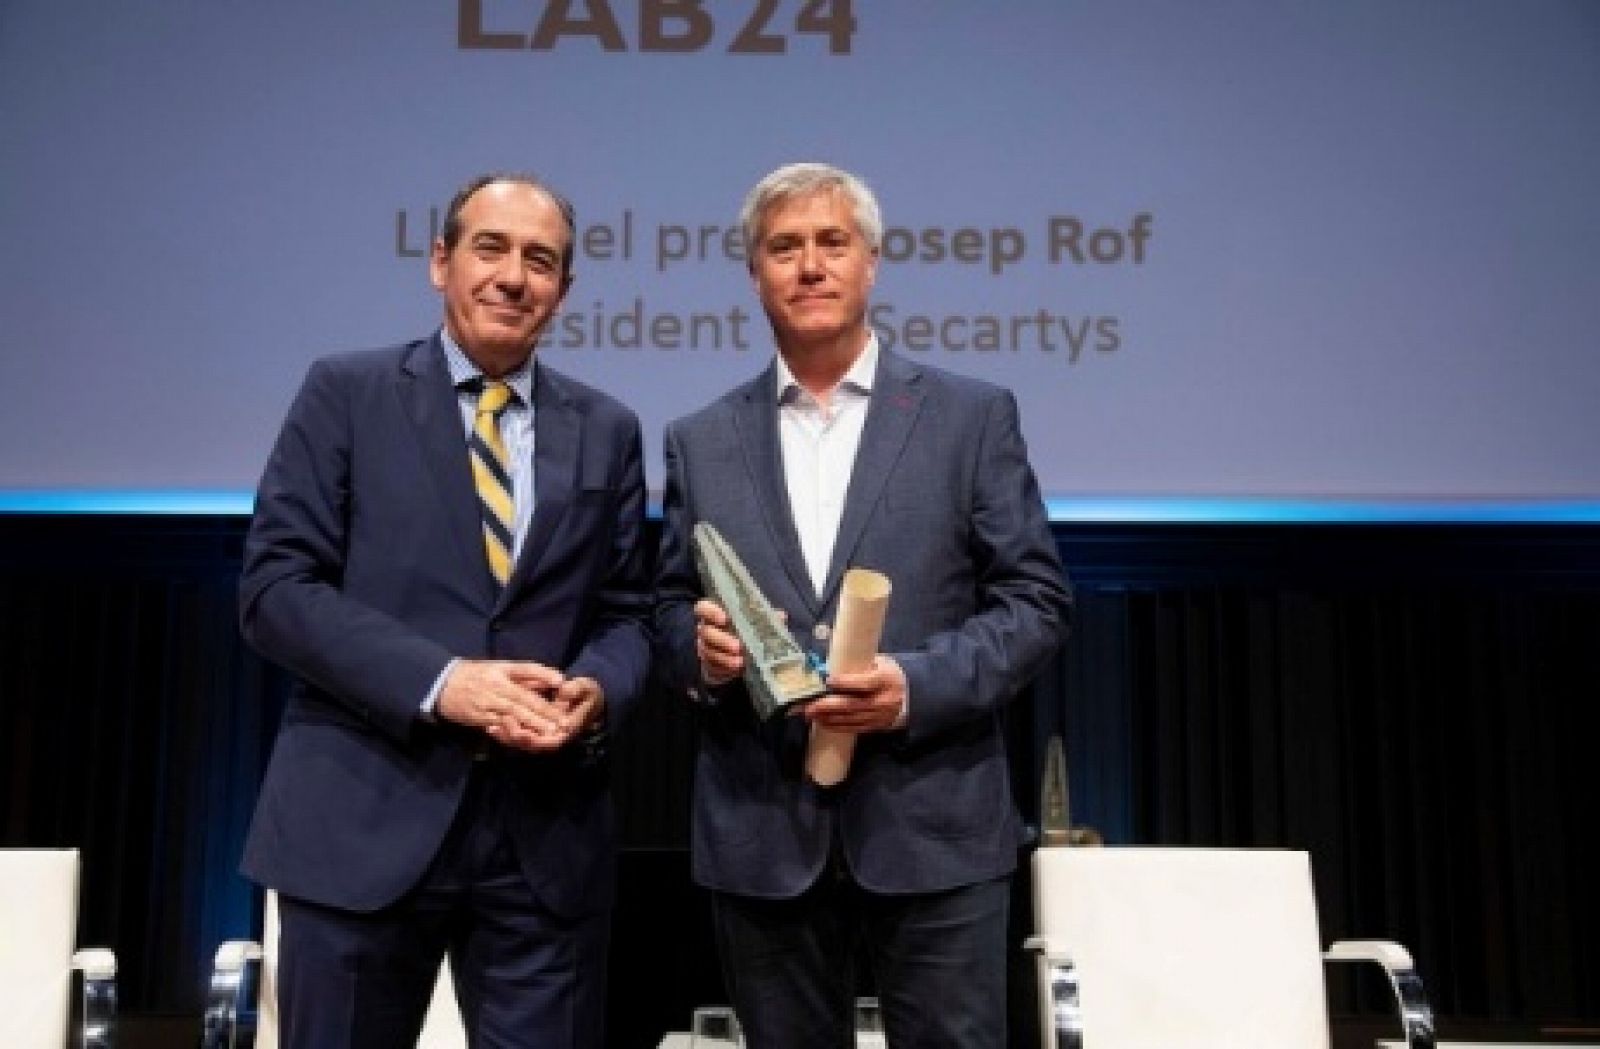 Pere Buhigas recoge el XIX Premio Conexió para el programa 'Lab24'